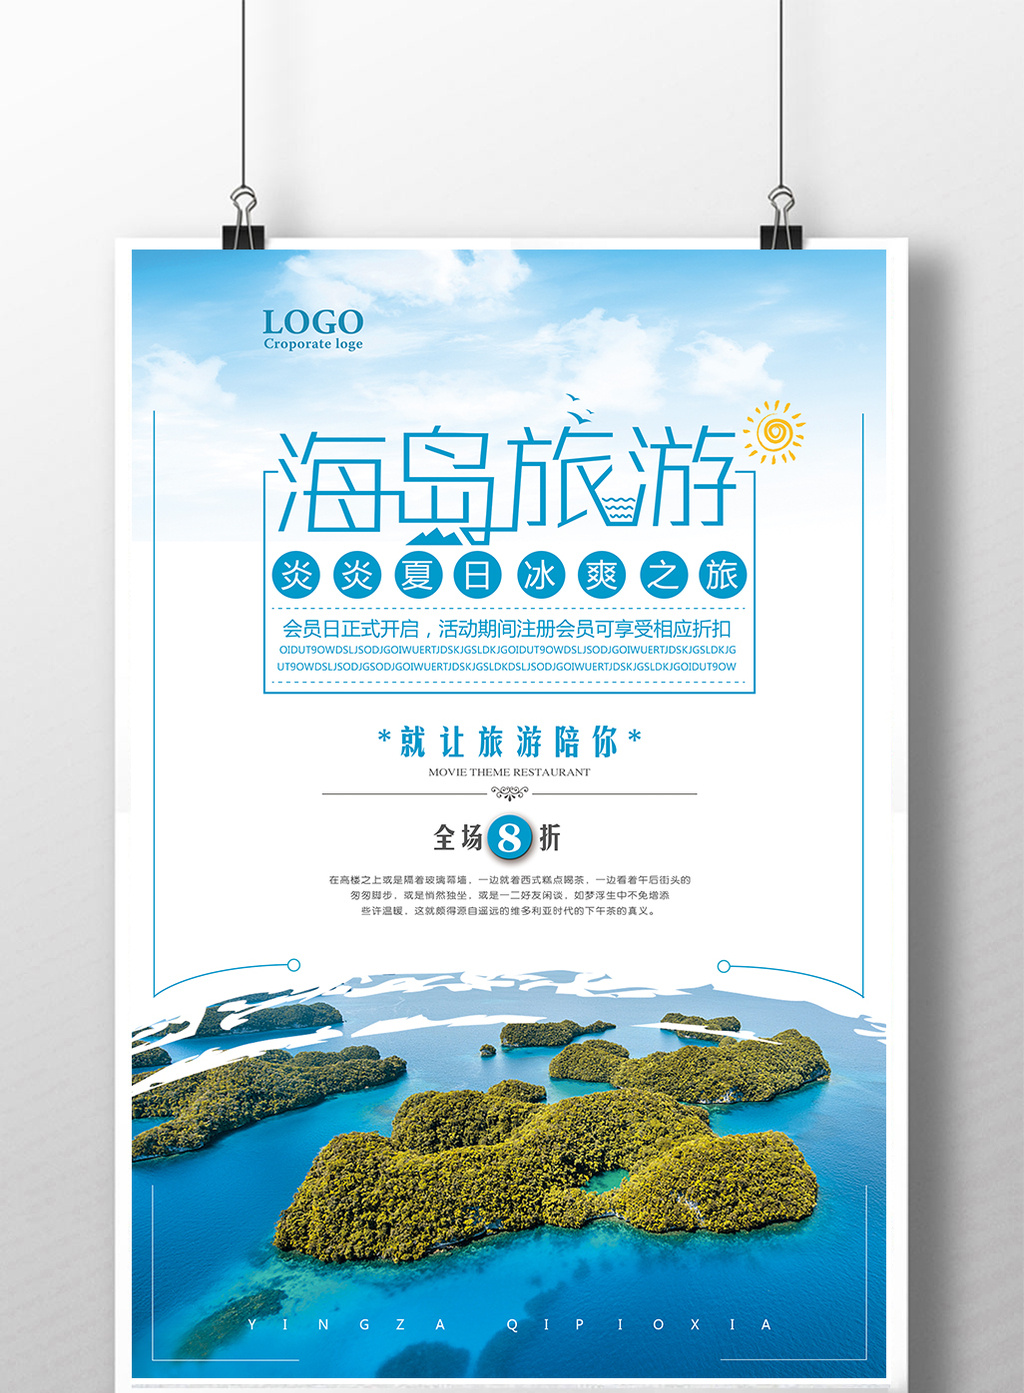 海岛旅游旅行社宣传海报设计模板免费下载 